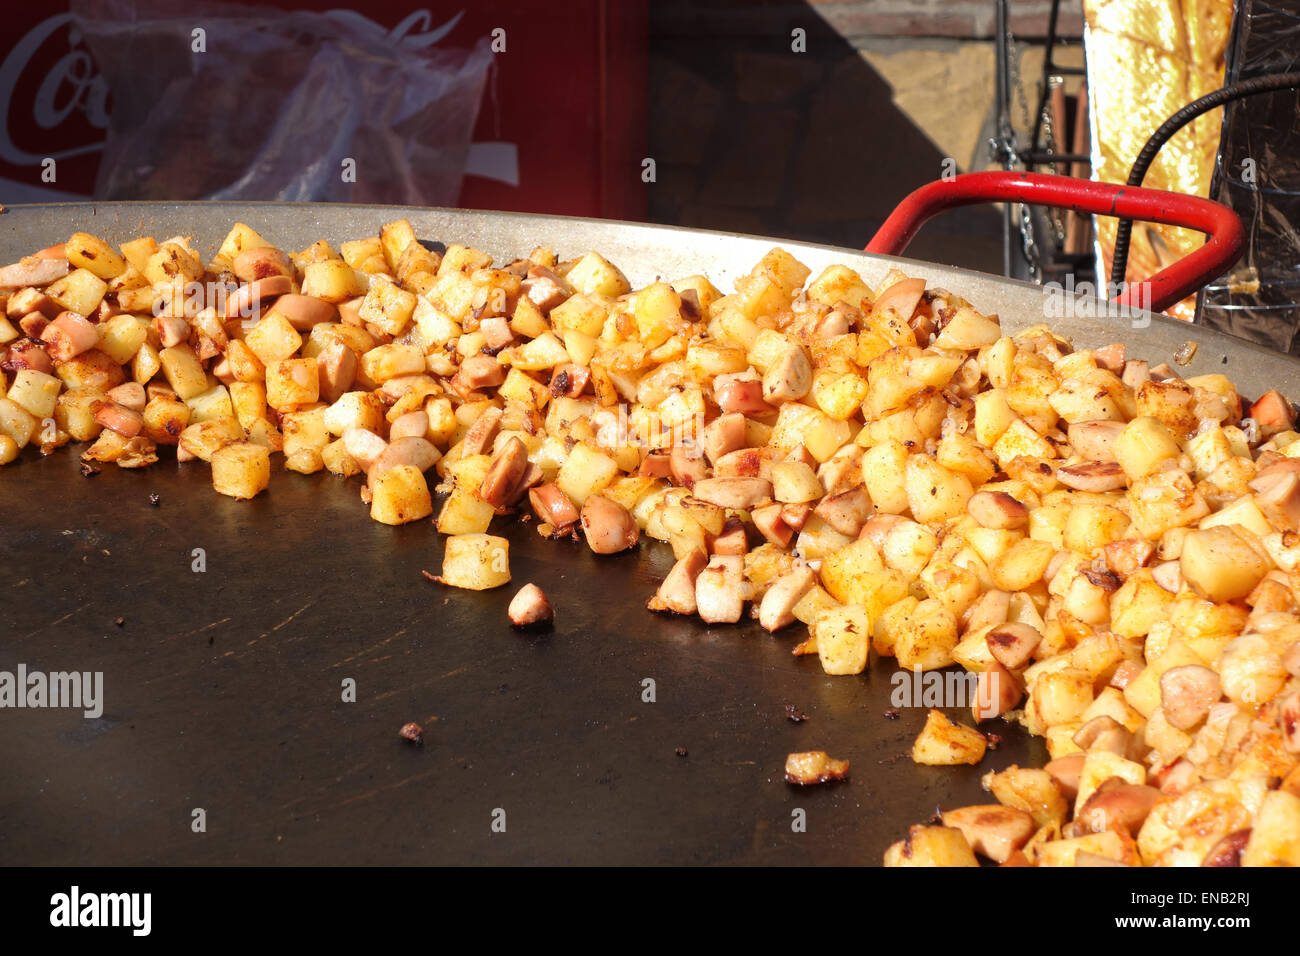 Erfahrene gebackene Kartoffelwürfel, Brocken, in einer großen Pfanne auf Straßenmarkt, Spanien. Stockfoto